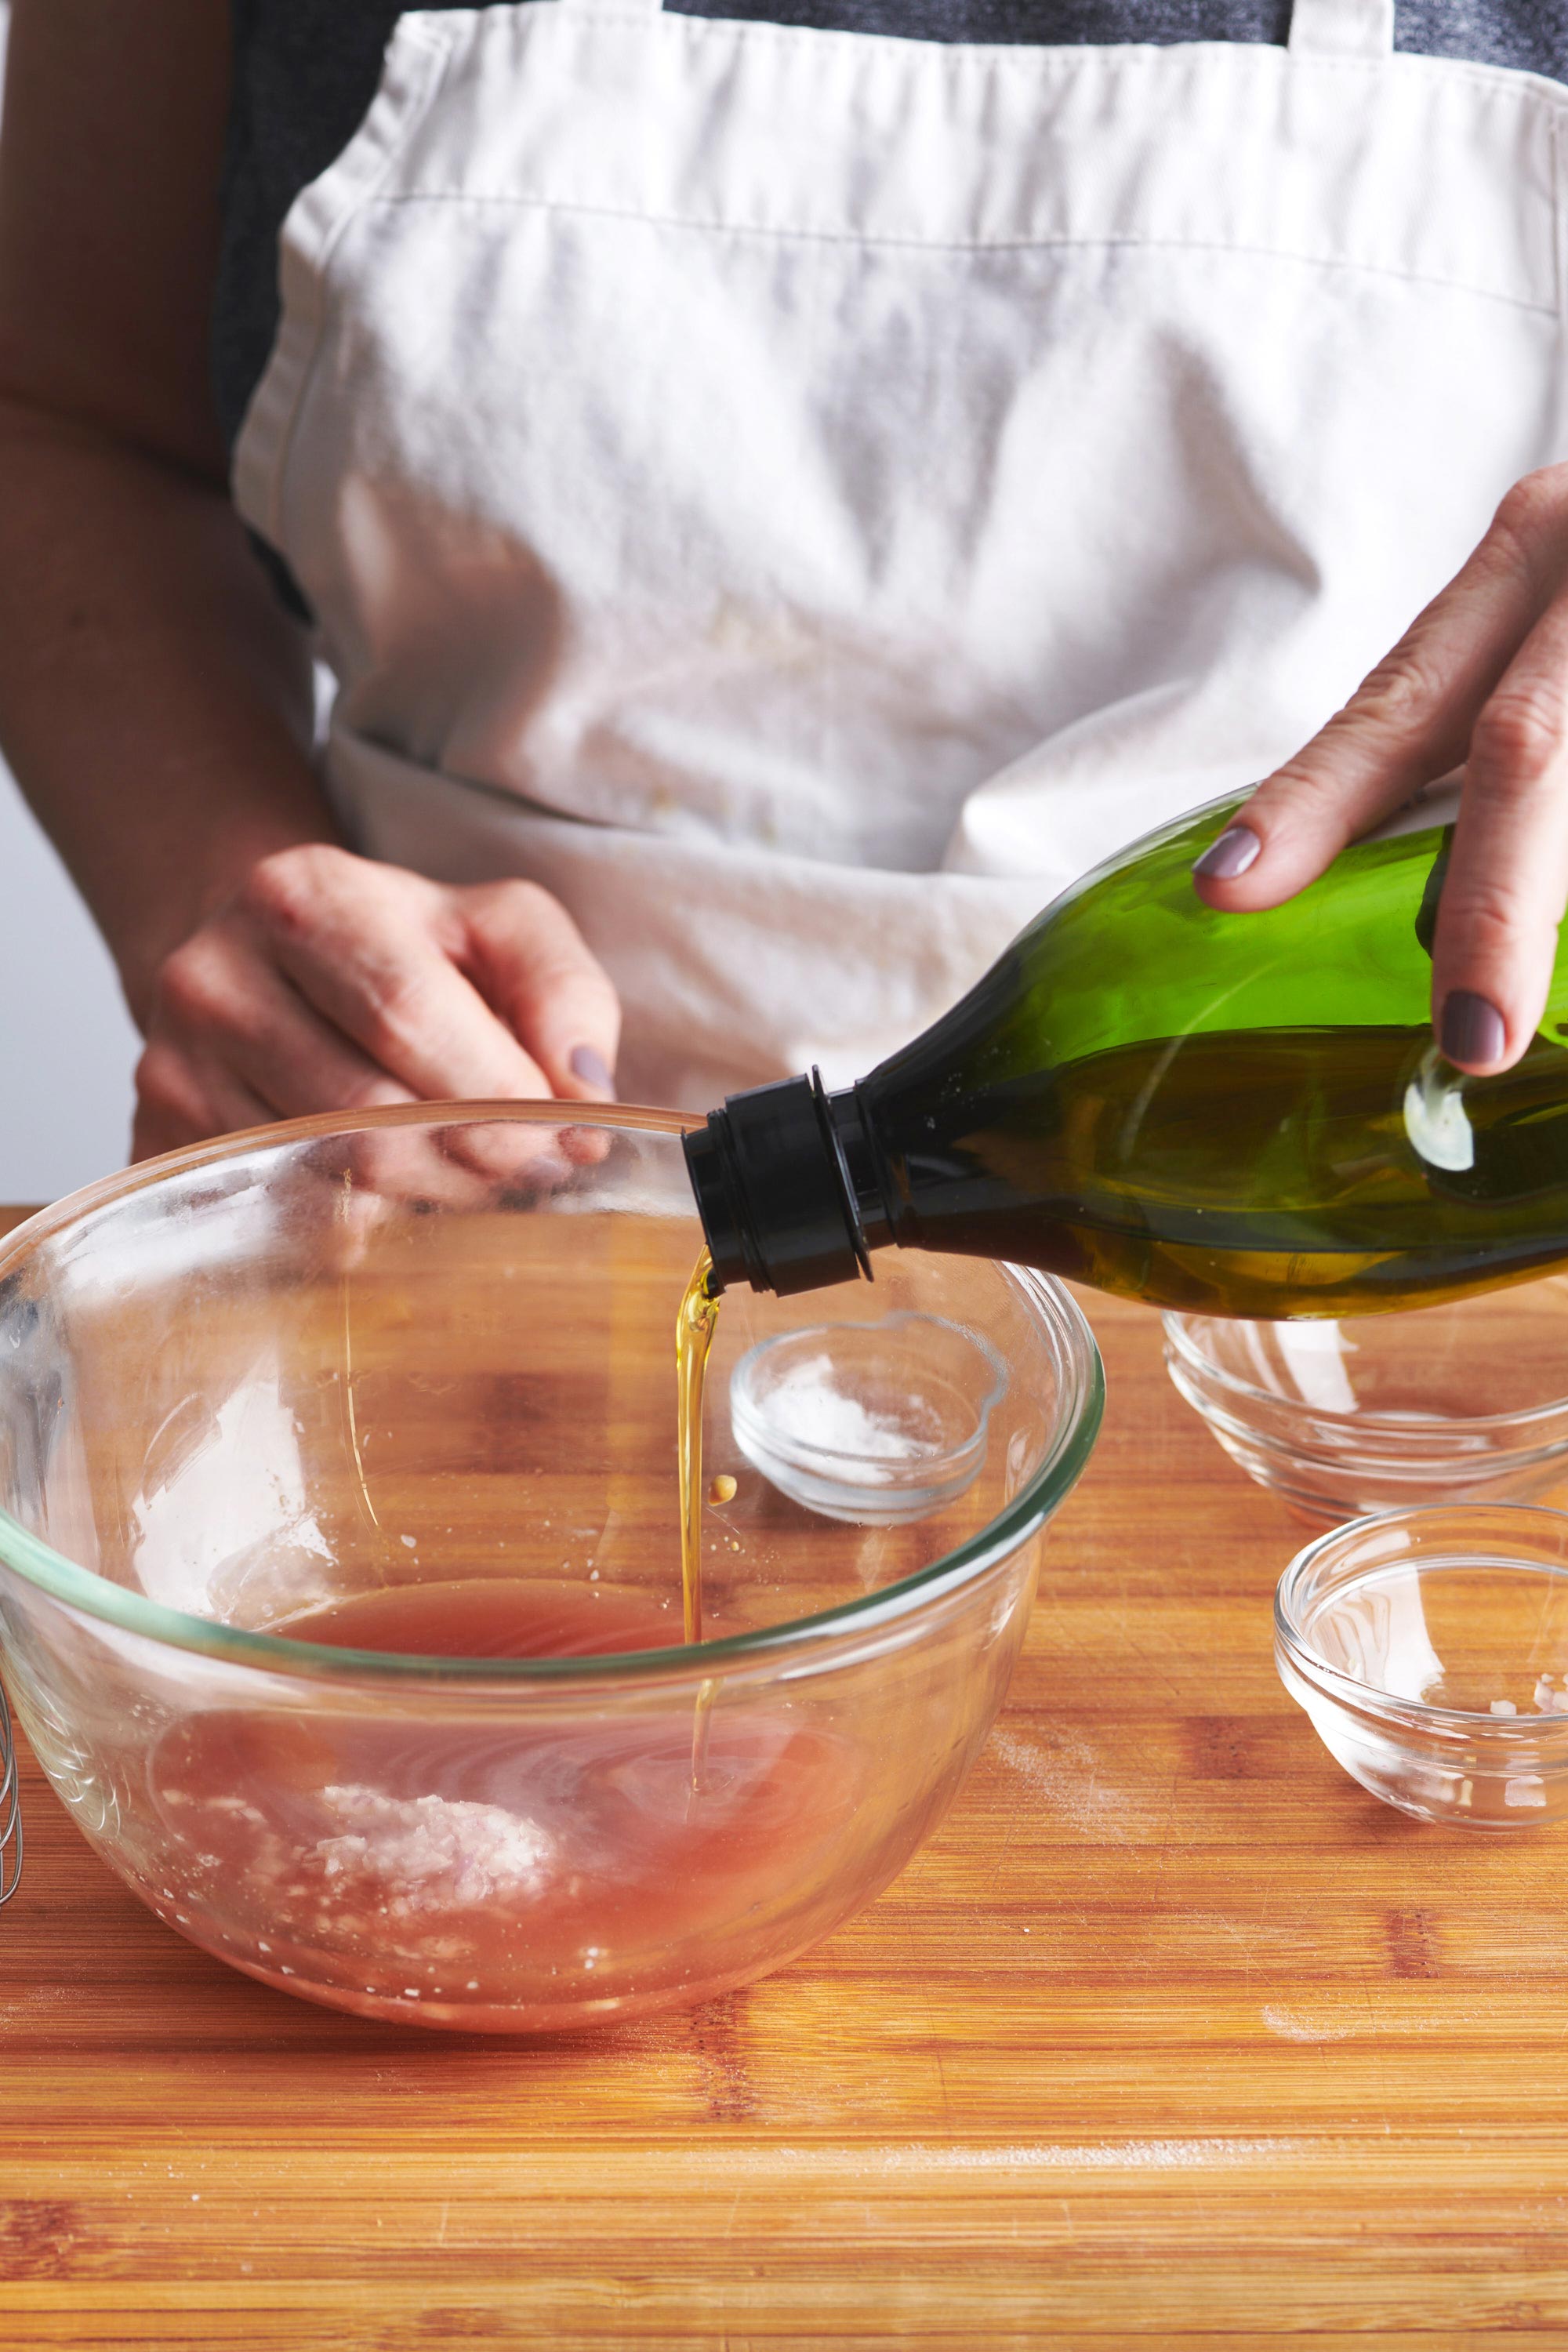 Woman making vinaigrette in glass bowl on countertop.